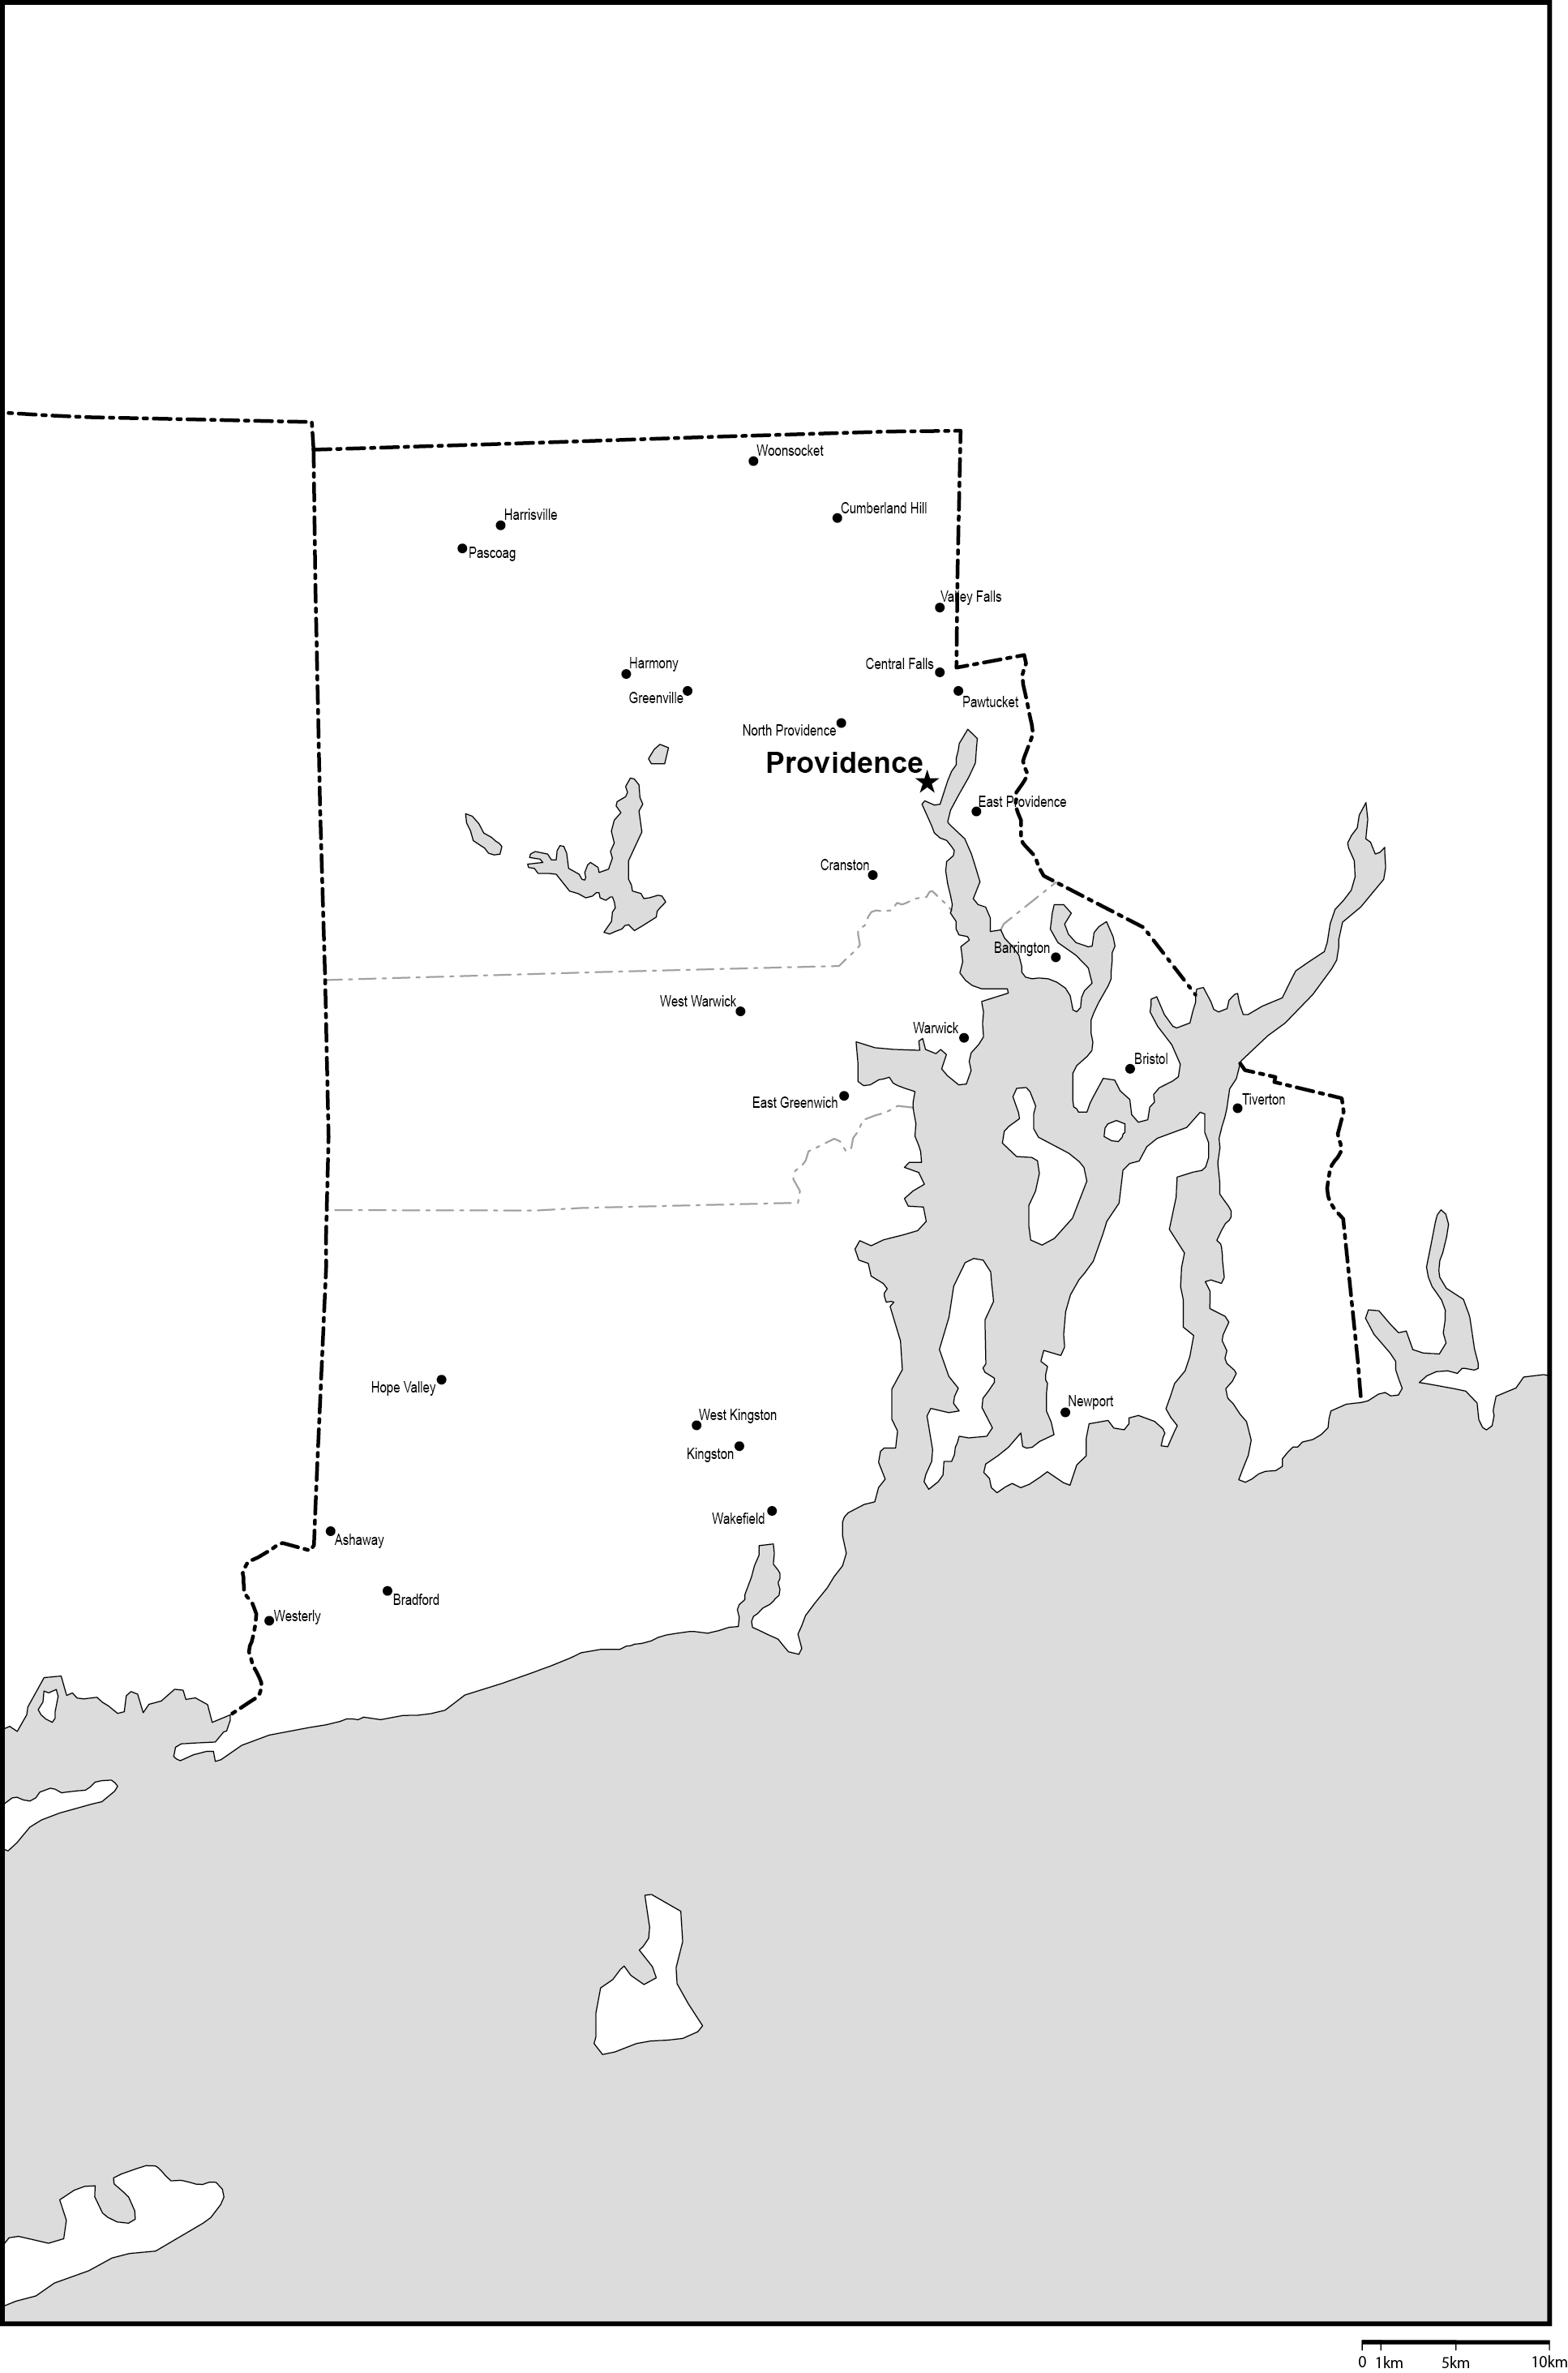 ロードアイランド州郡分け白地図州都・主な都市あり(英語)フリーデータの画像